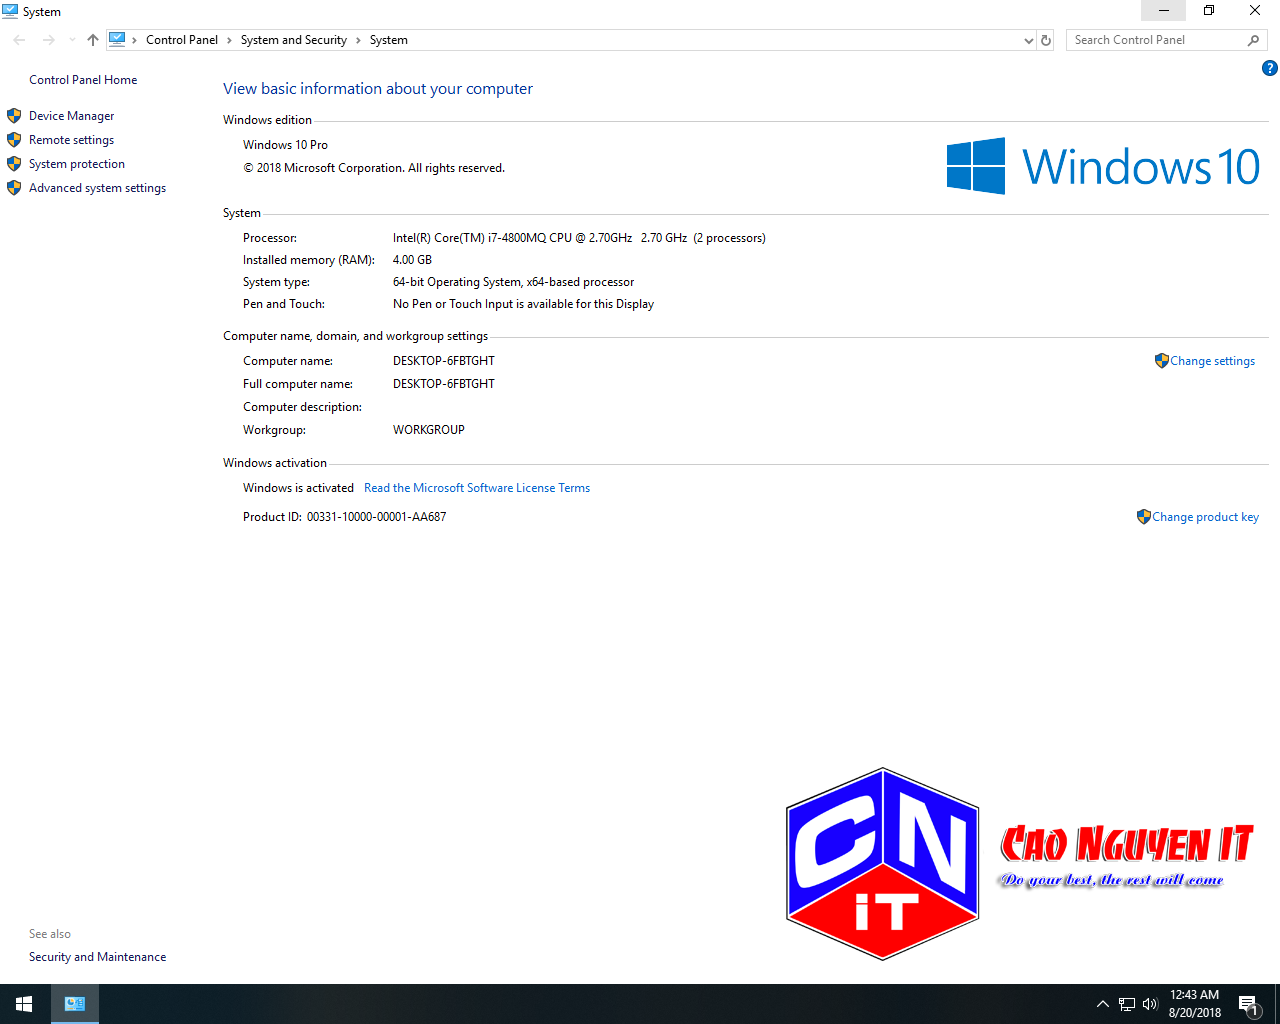 Ghost Windows 10 Pro Graphics 64 bit VR 1803 | Chuyên đồ họa, không cá nhân hóa